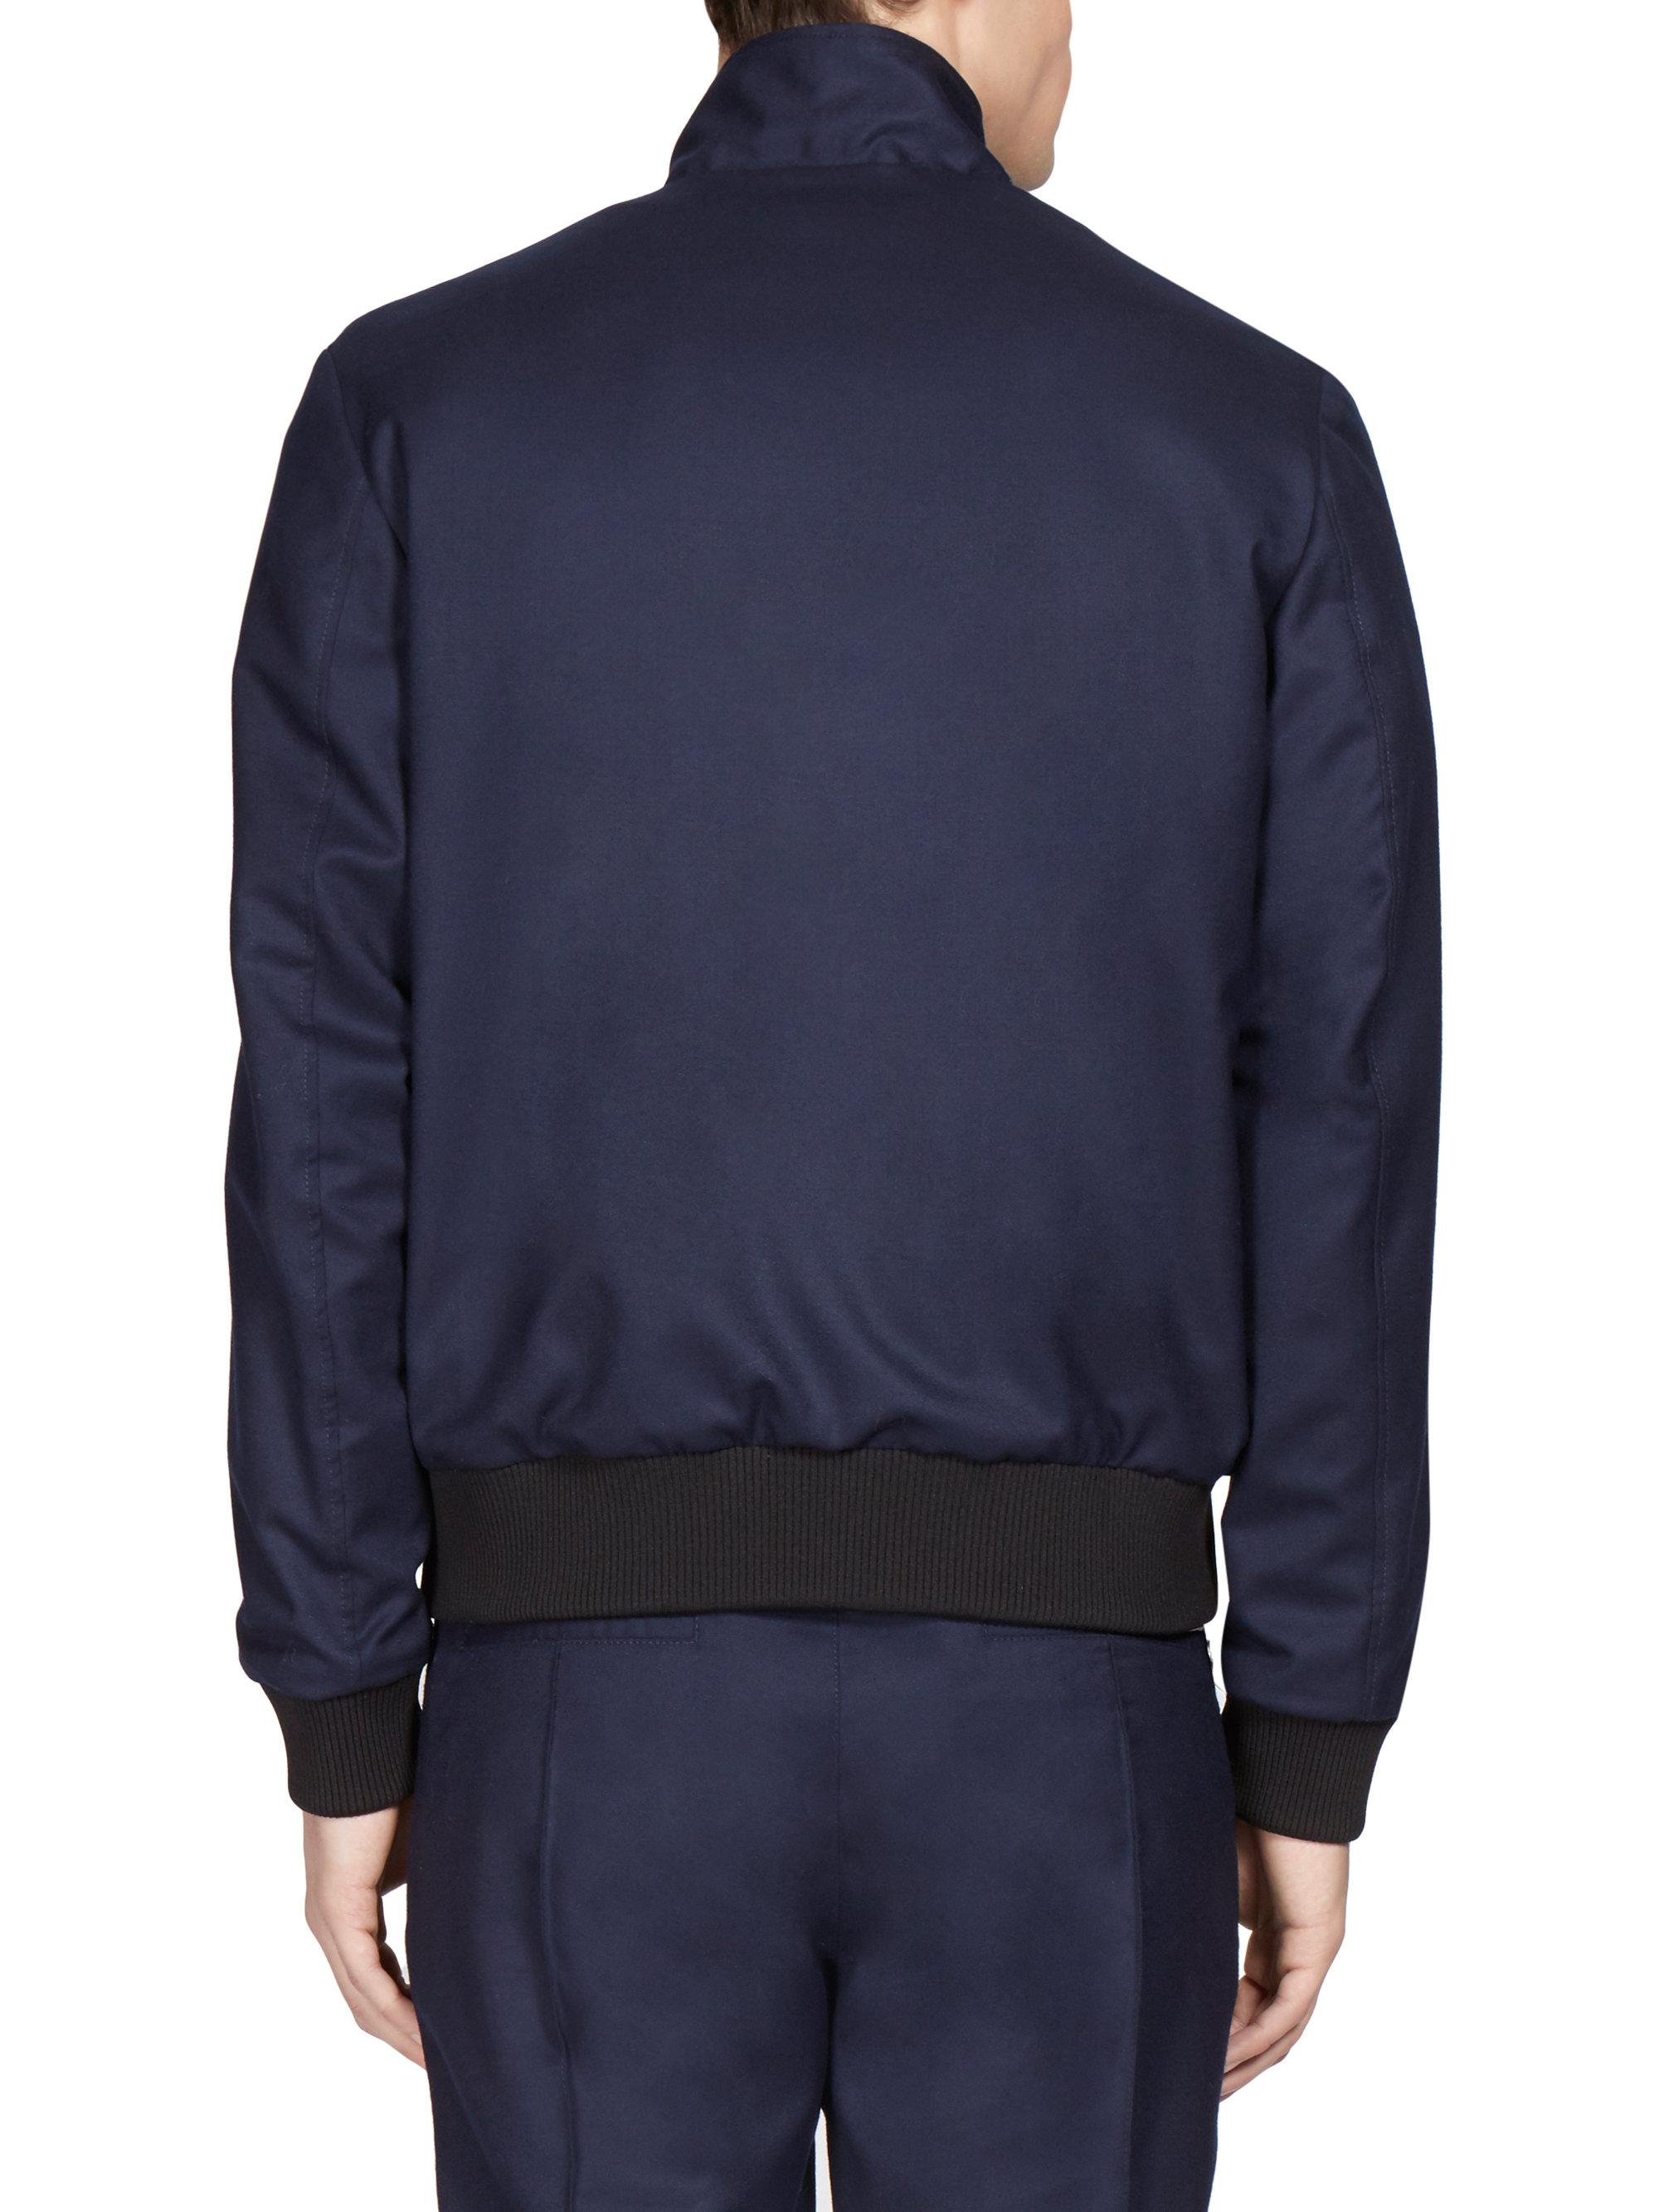 Lyst - KENZO Reversible Blouson Wool Jacket in Blue for Men